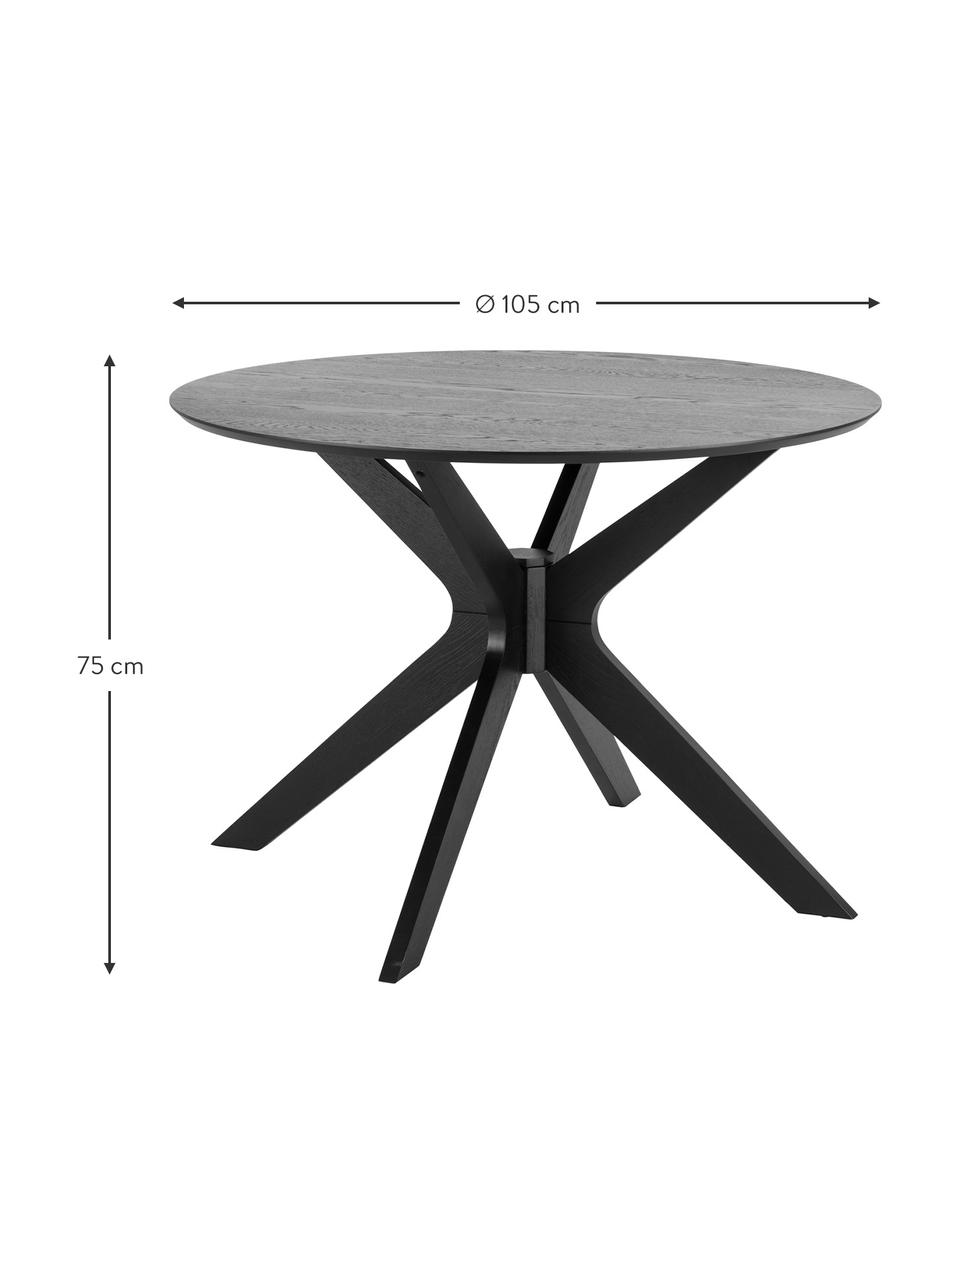 Kulatý jídelní stůl Duncan, Ø 105 cm, Černá, Ø 105 cm, V 75 cm